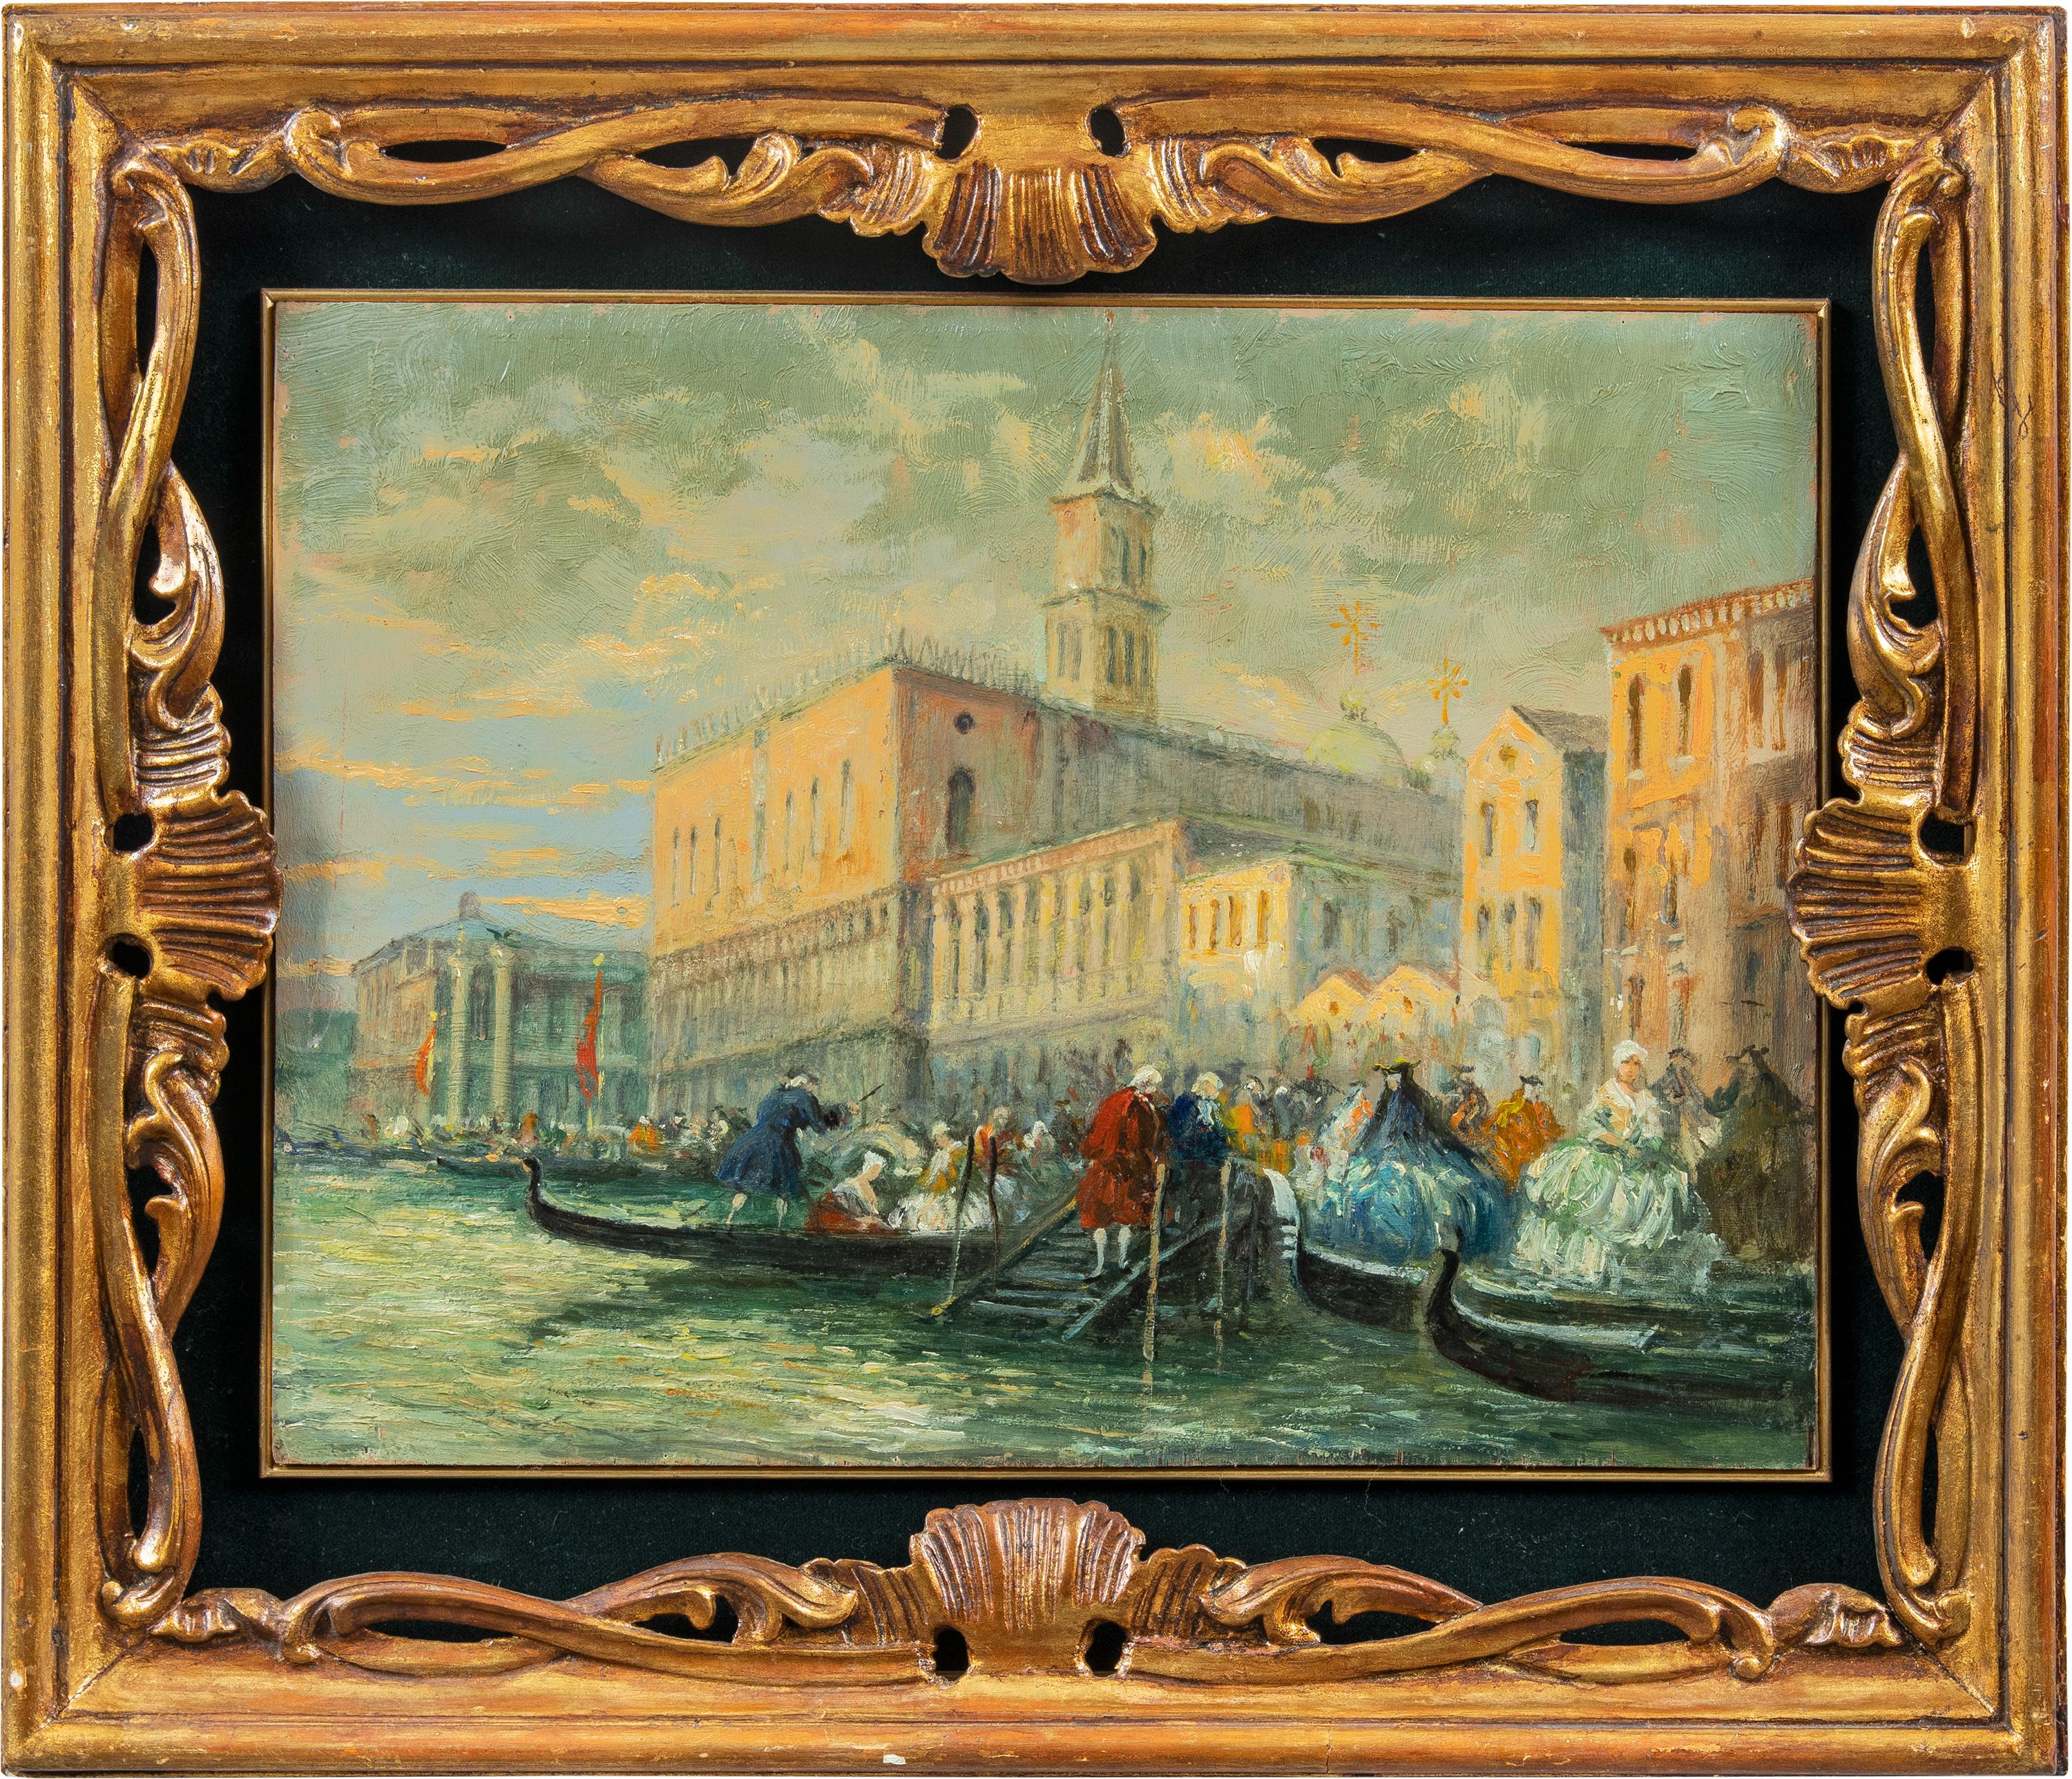 Vedutistischer venezianischer Maler - 19. Jahrhundert Venedig Ansicht Gemälde - Öl auf Tafel